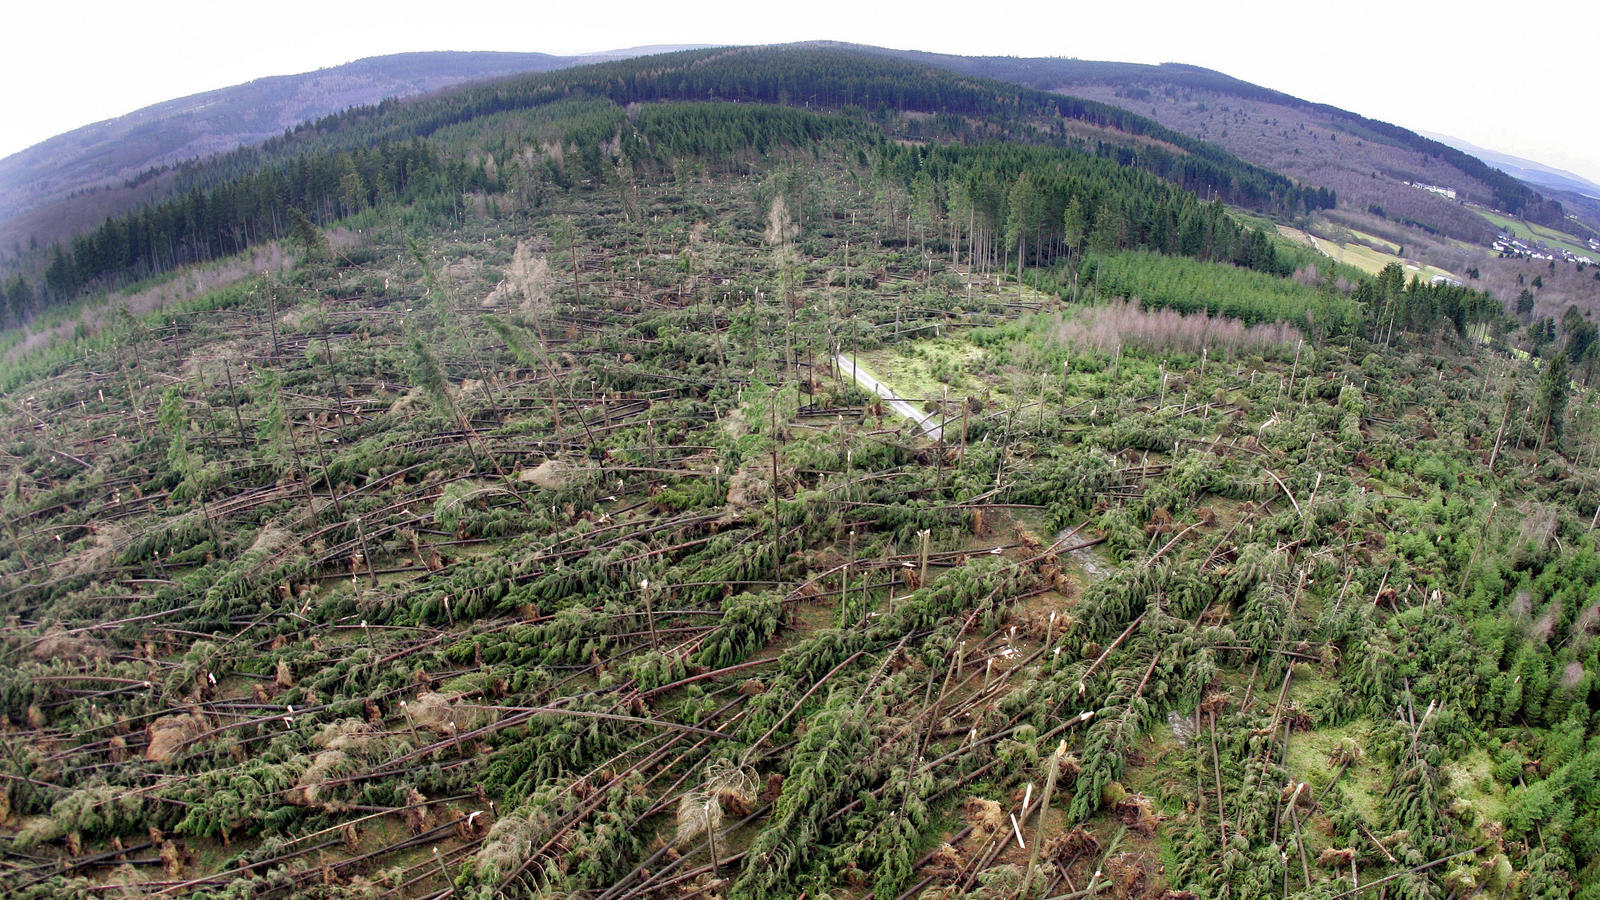 Von Orkan 'Kyrill' verwüstete Waldfläche: Entwurzelte und abgebrochene Bäume liegen in der Nähe von Wilmsdorf (Kreis Siegen-Wittgenstein) an einem Hang. (Foto vom 20.01.2007)